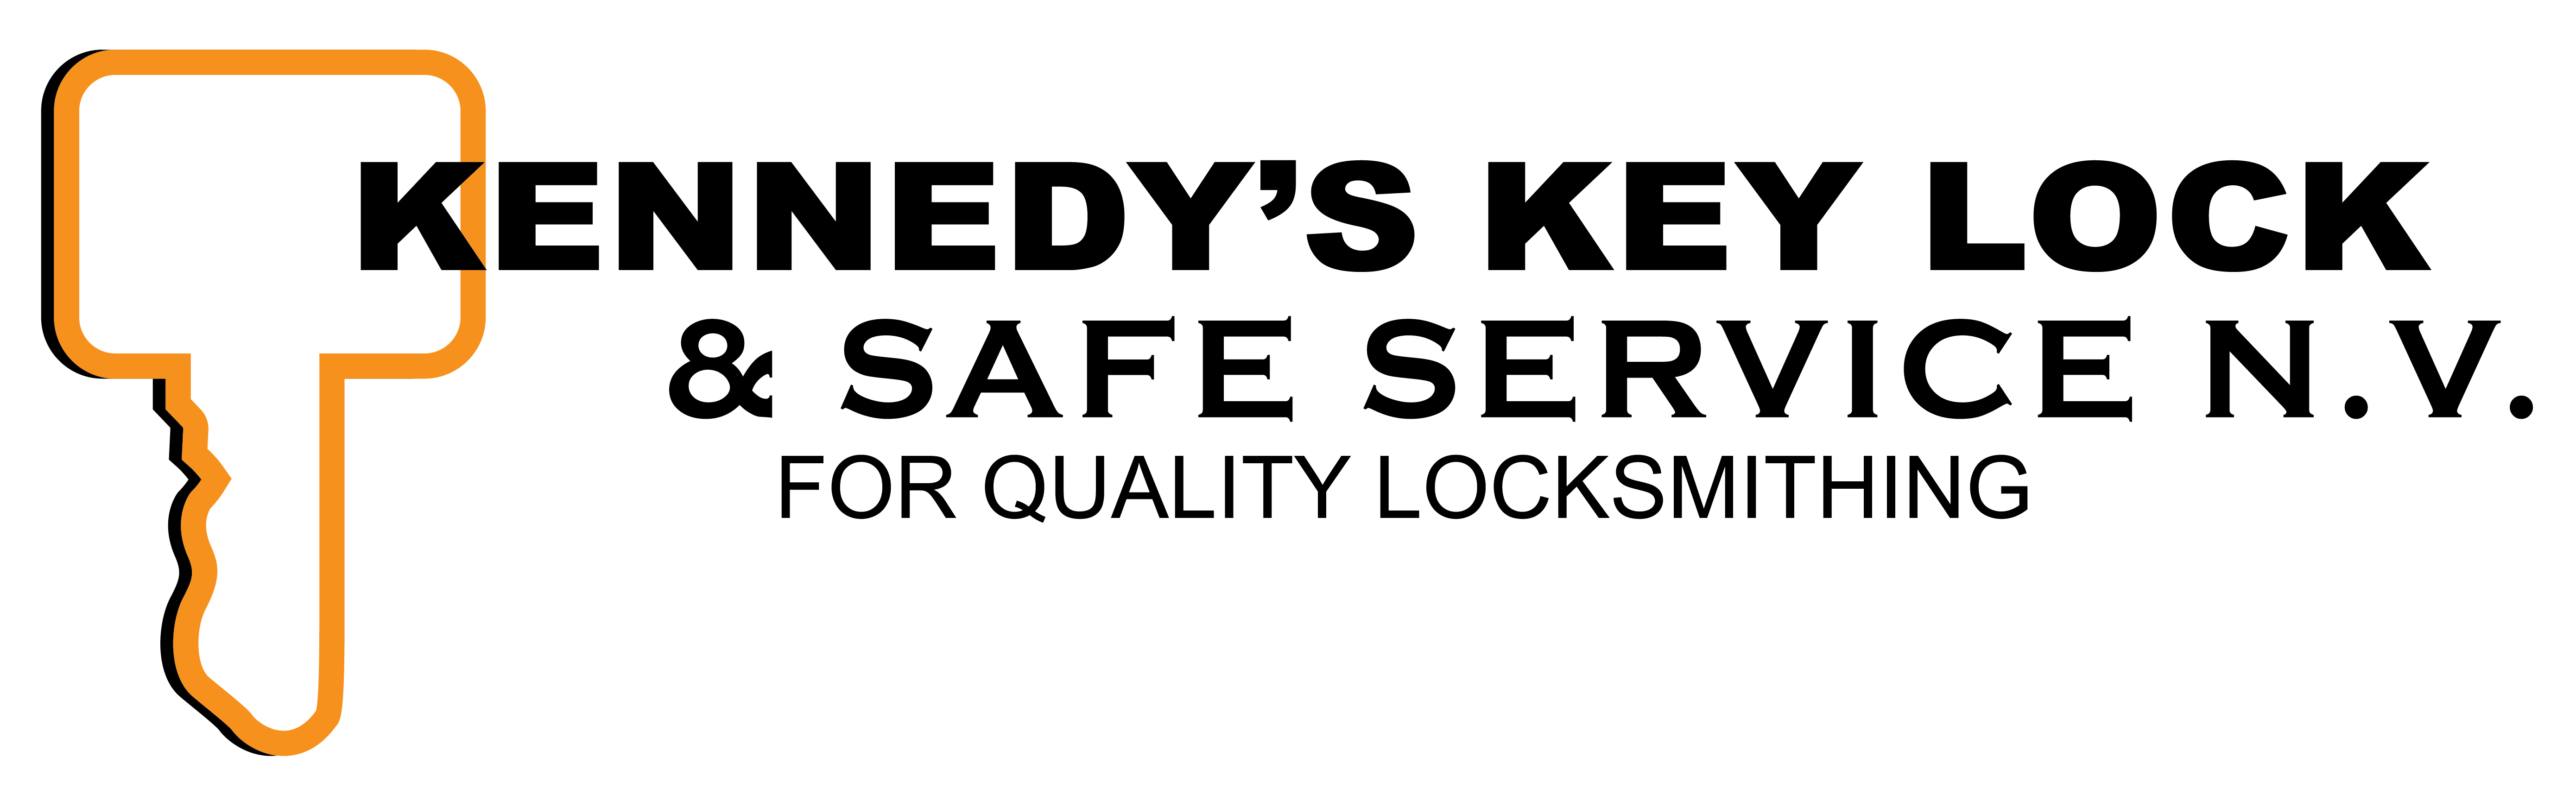 Kennedy's Key Lock & Safe Service Logo